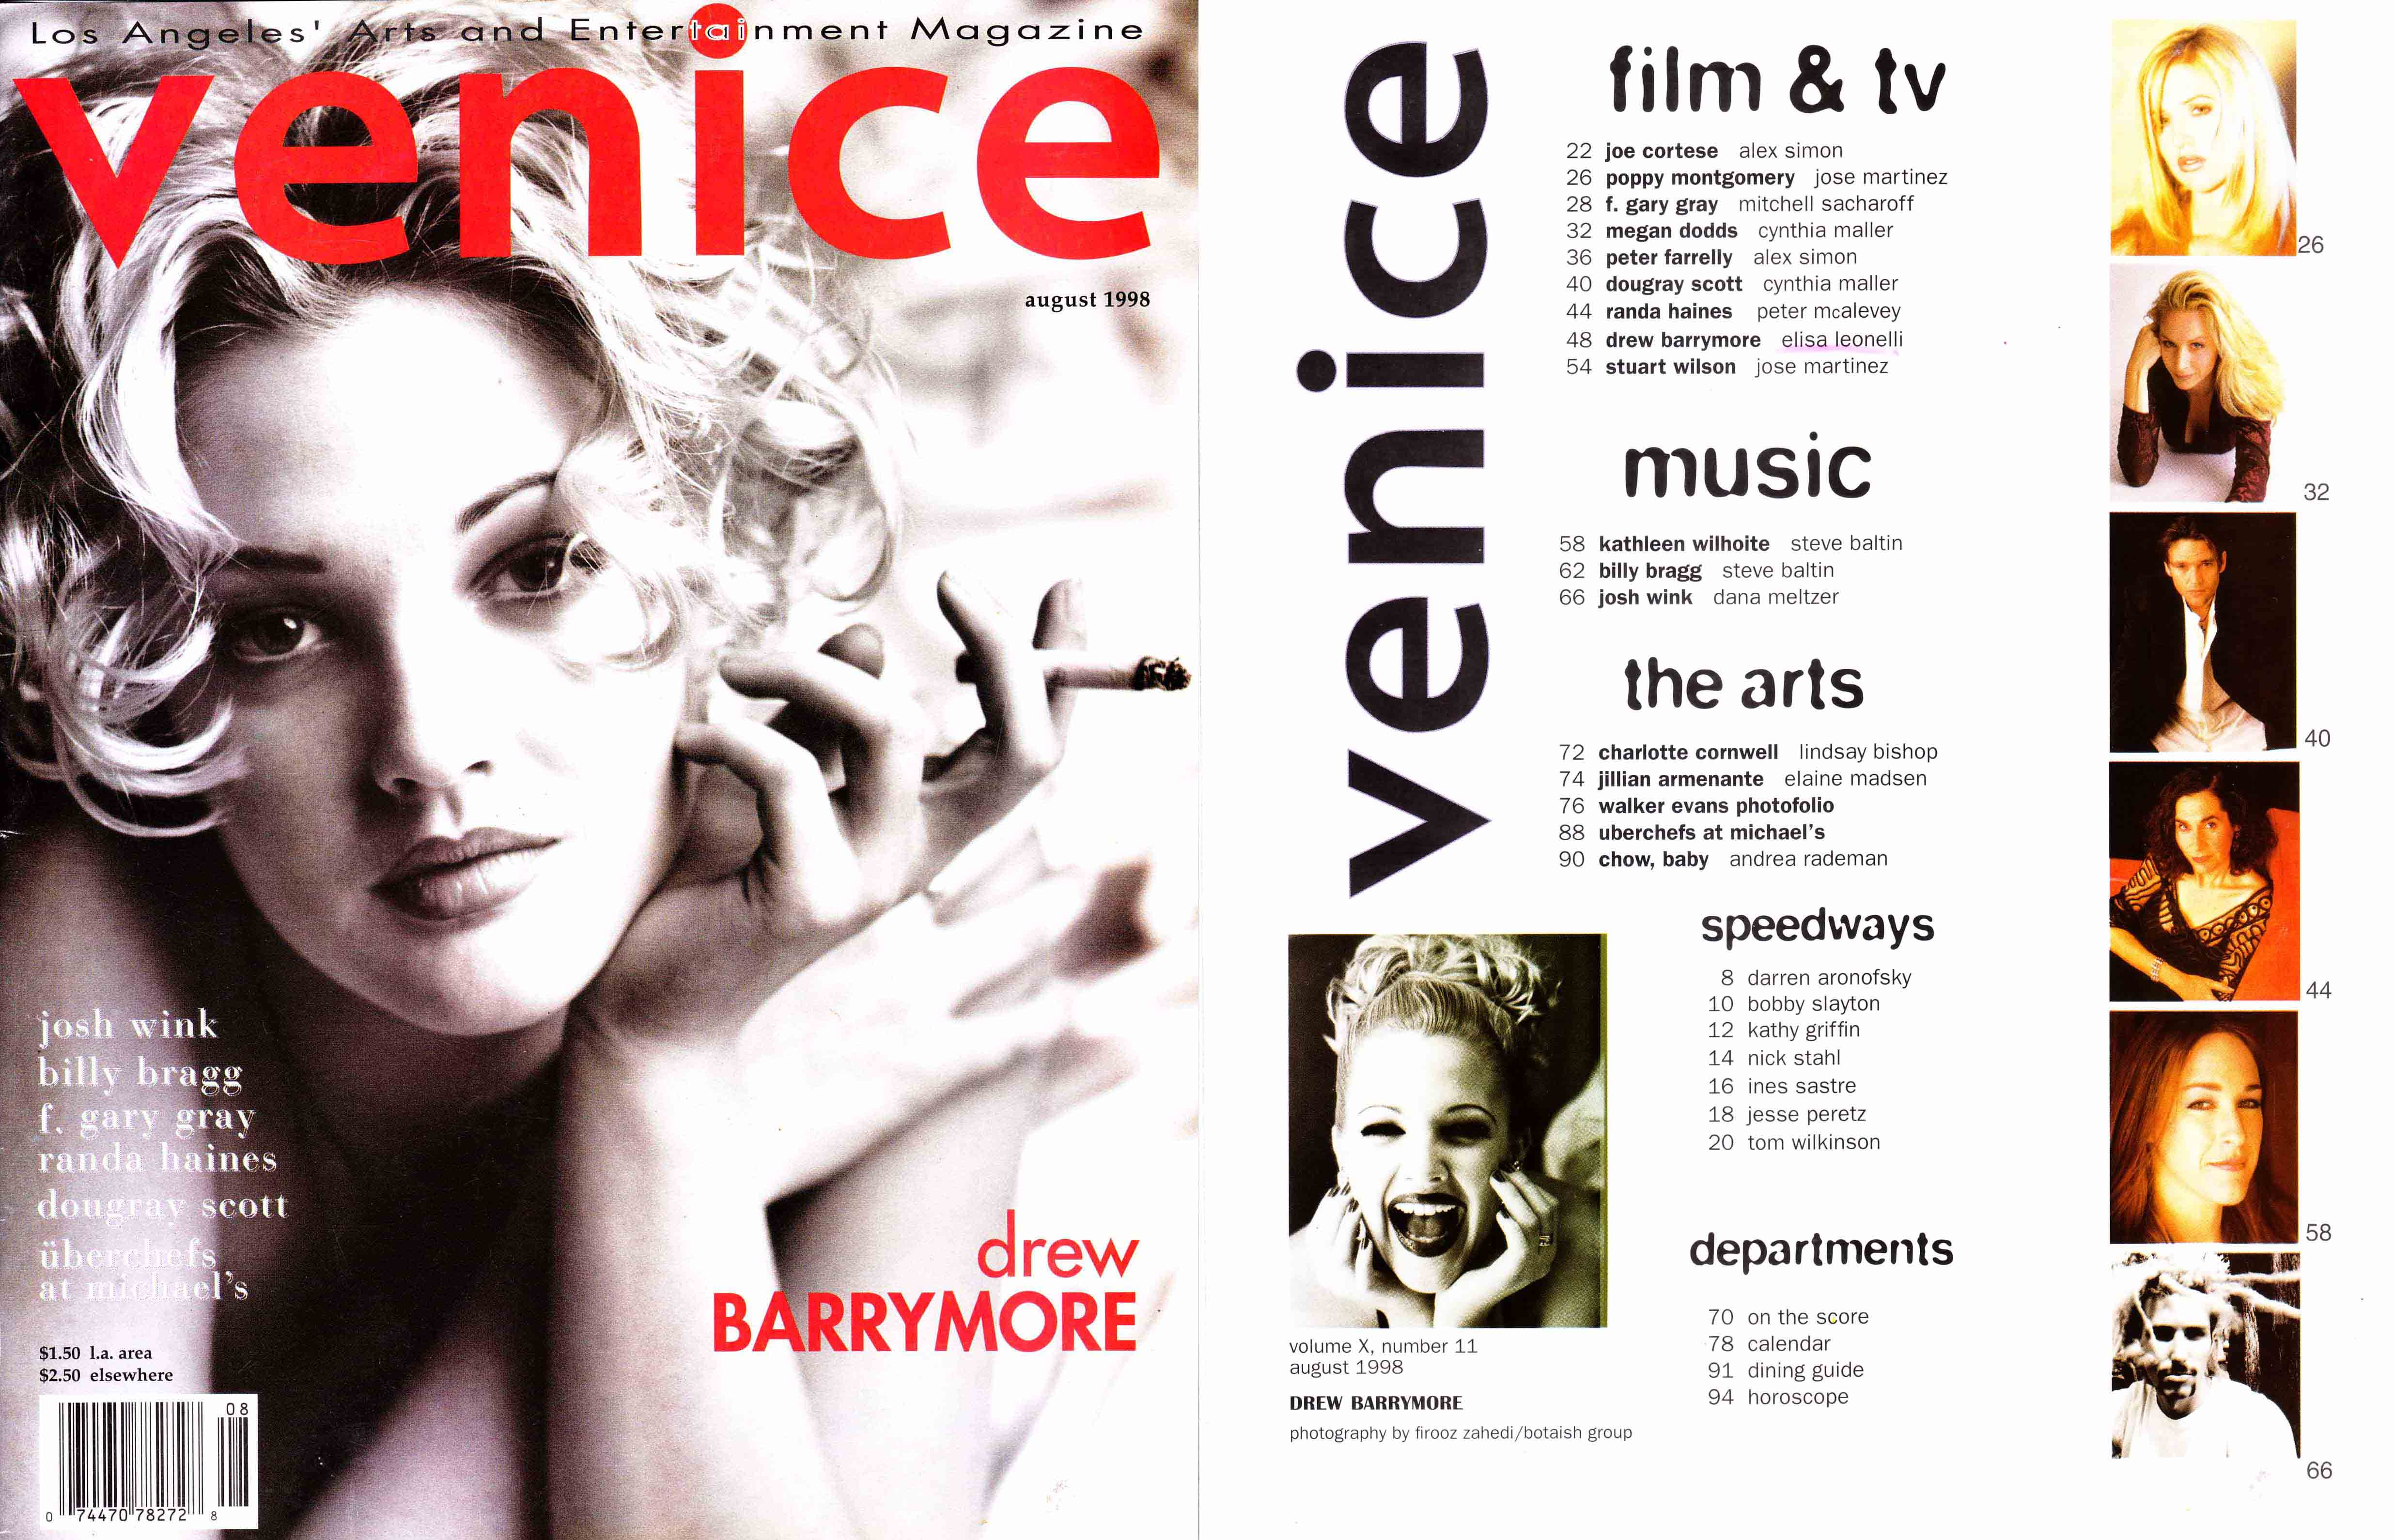 Сексуальная Дрю Бэримор на фотографиях из журналов и личного фотоальбома